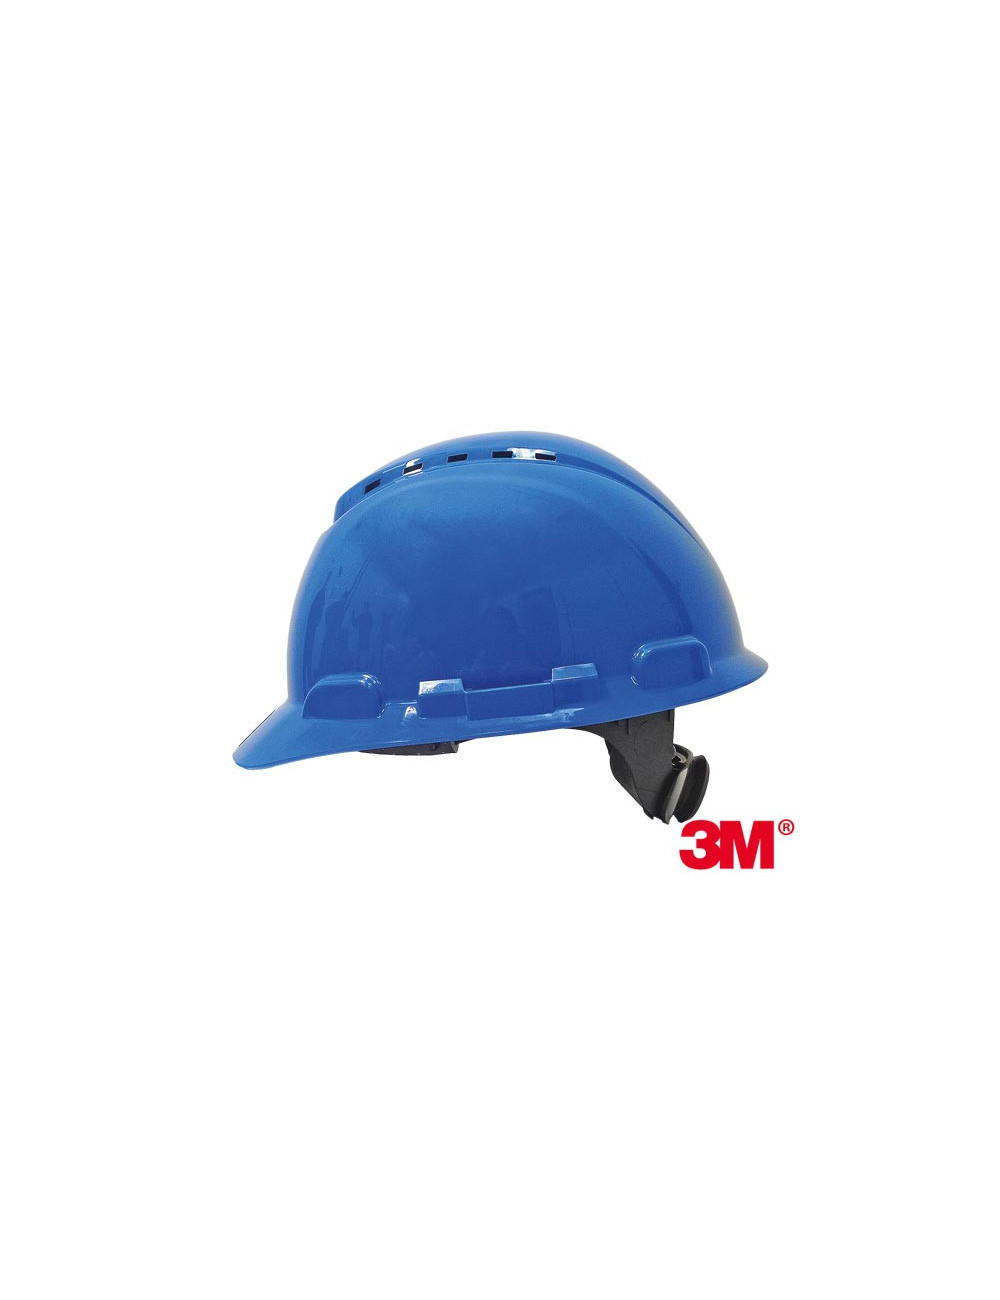 Protective helmet n blue 3M 3m-kas-h700n